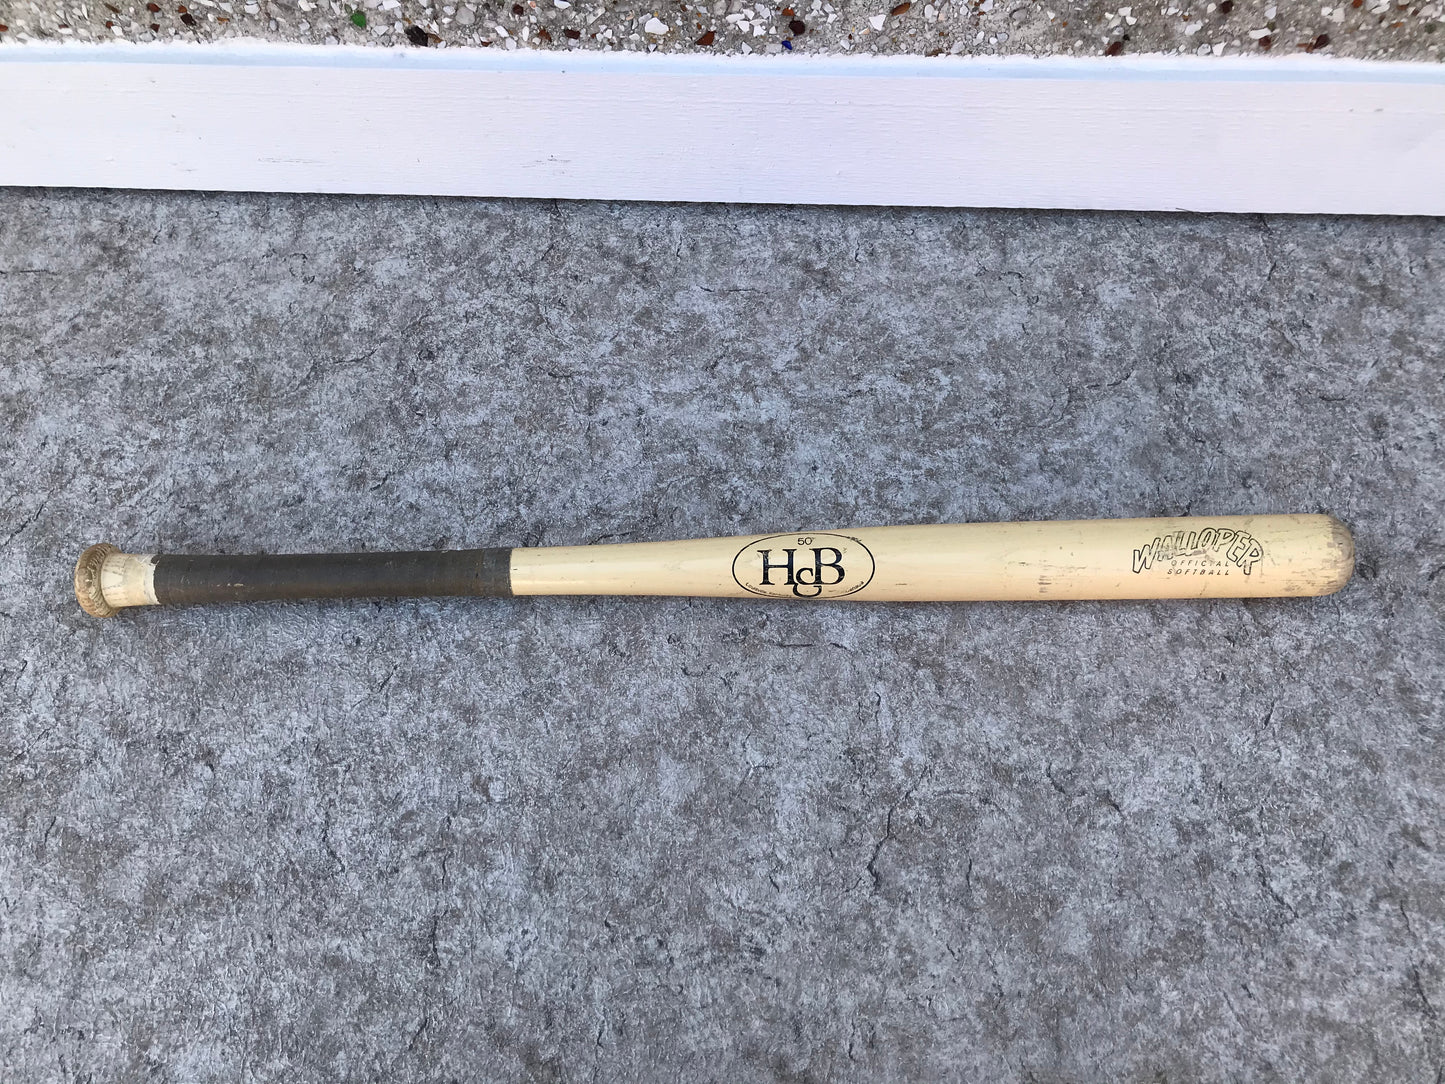 Baseball Bat Vintage H&B Hillerich & Bradsby No. 50 Wood Softball Bat Walloper Louisville Kentucky Rare